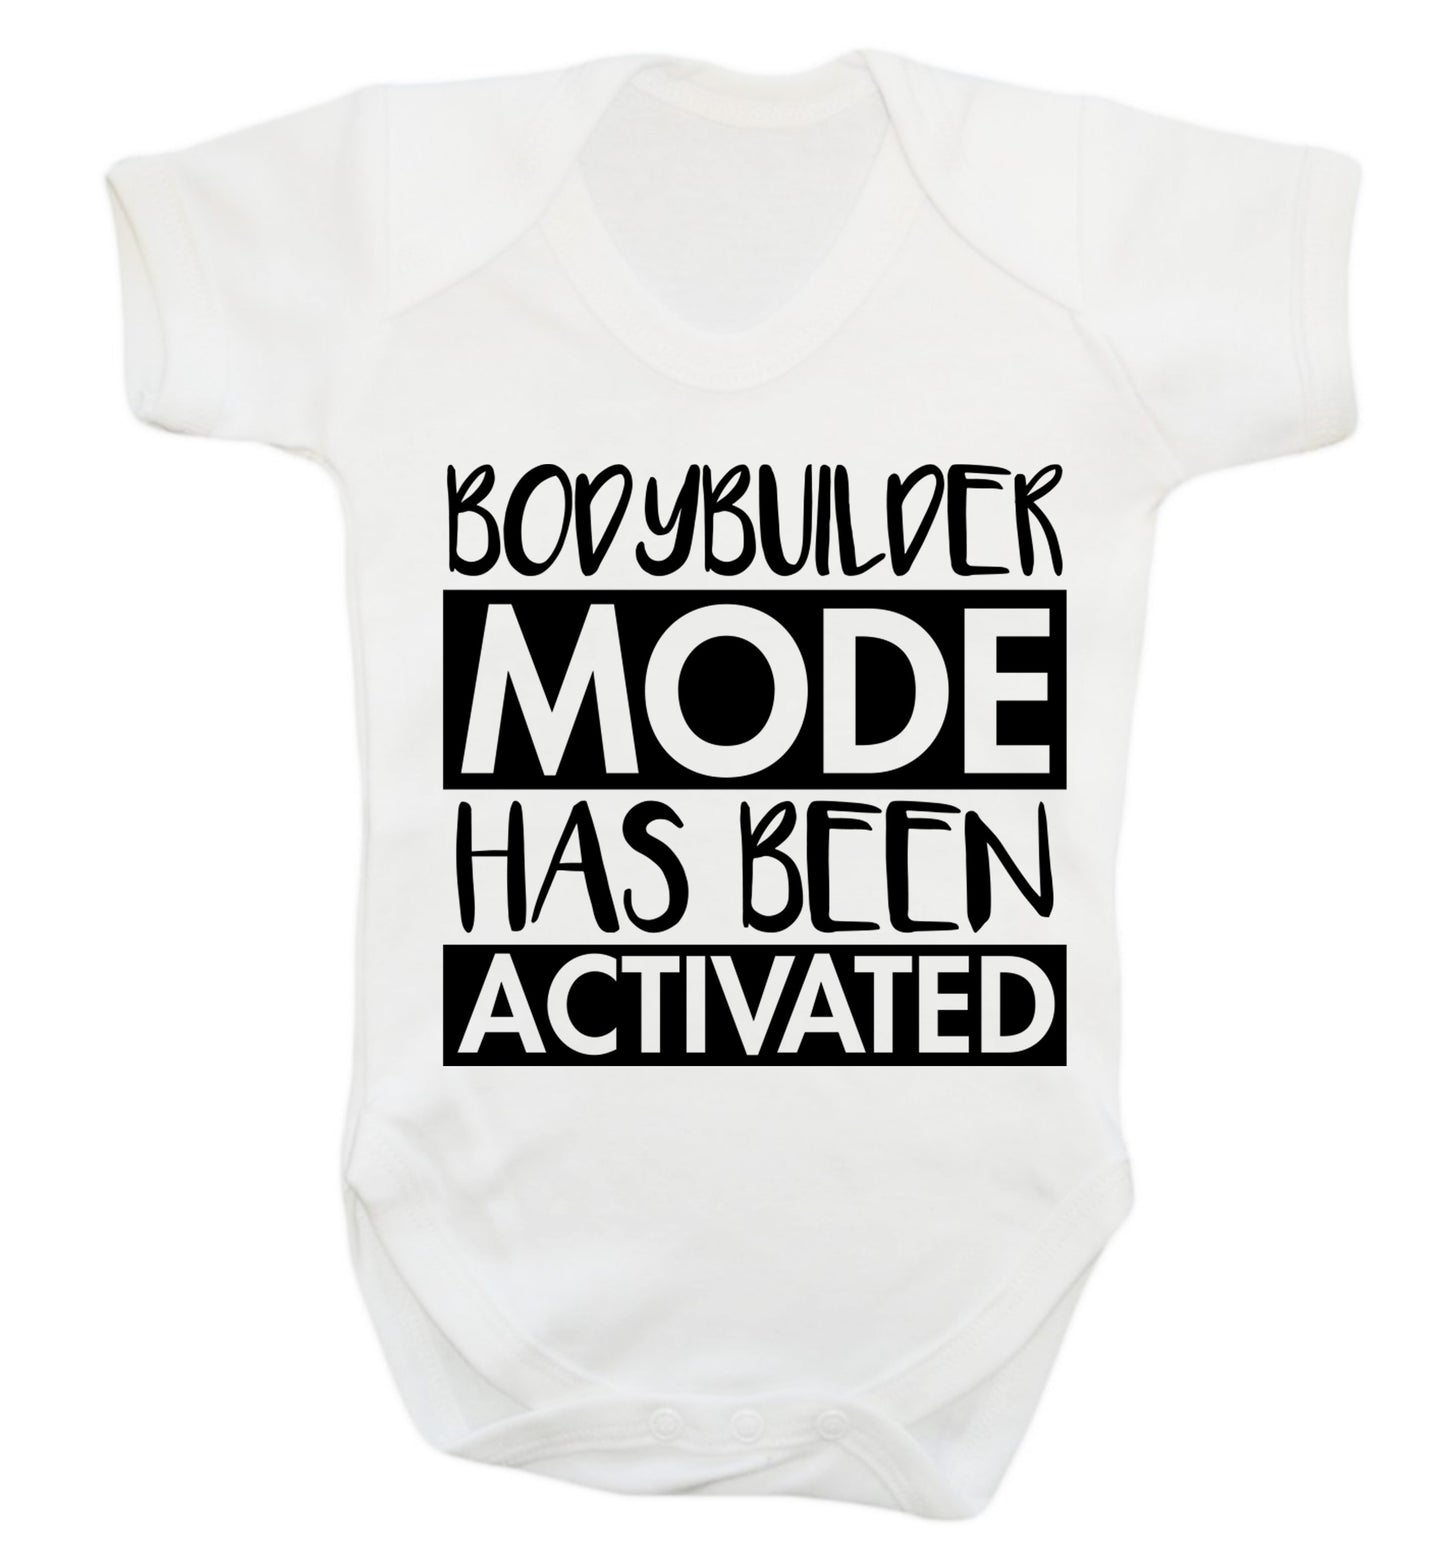 Bodybuilder mode activated Baby Vest white 18-24 months